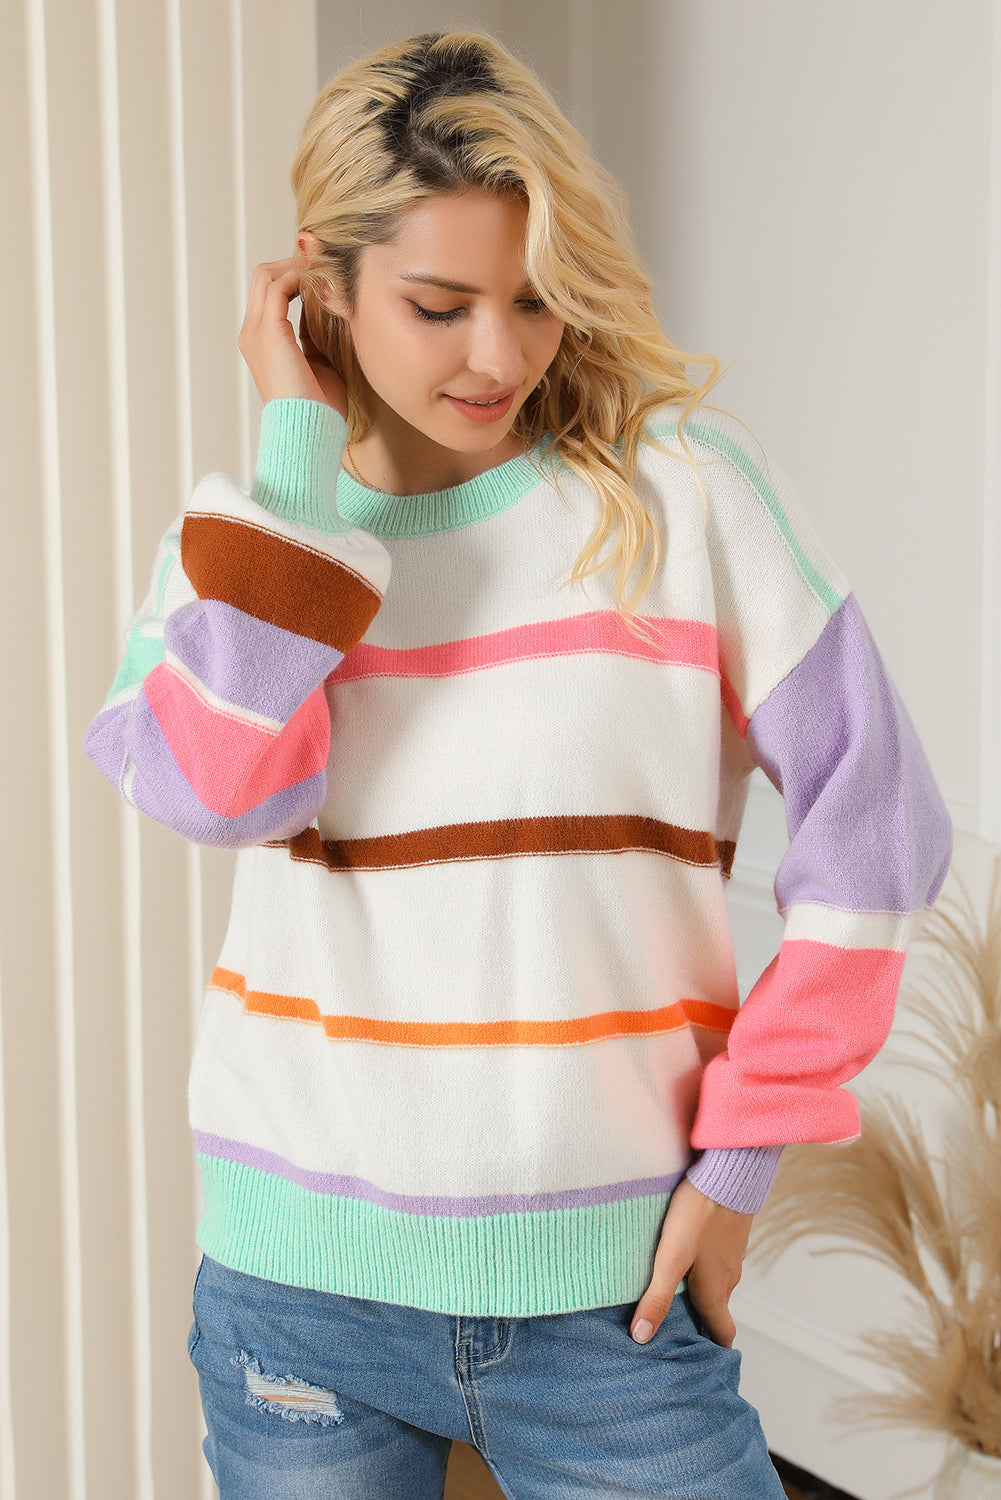 Pulover na spuštena ramena s višebojnim prugama u boji